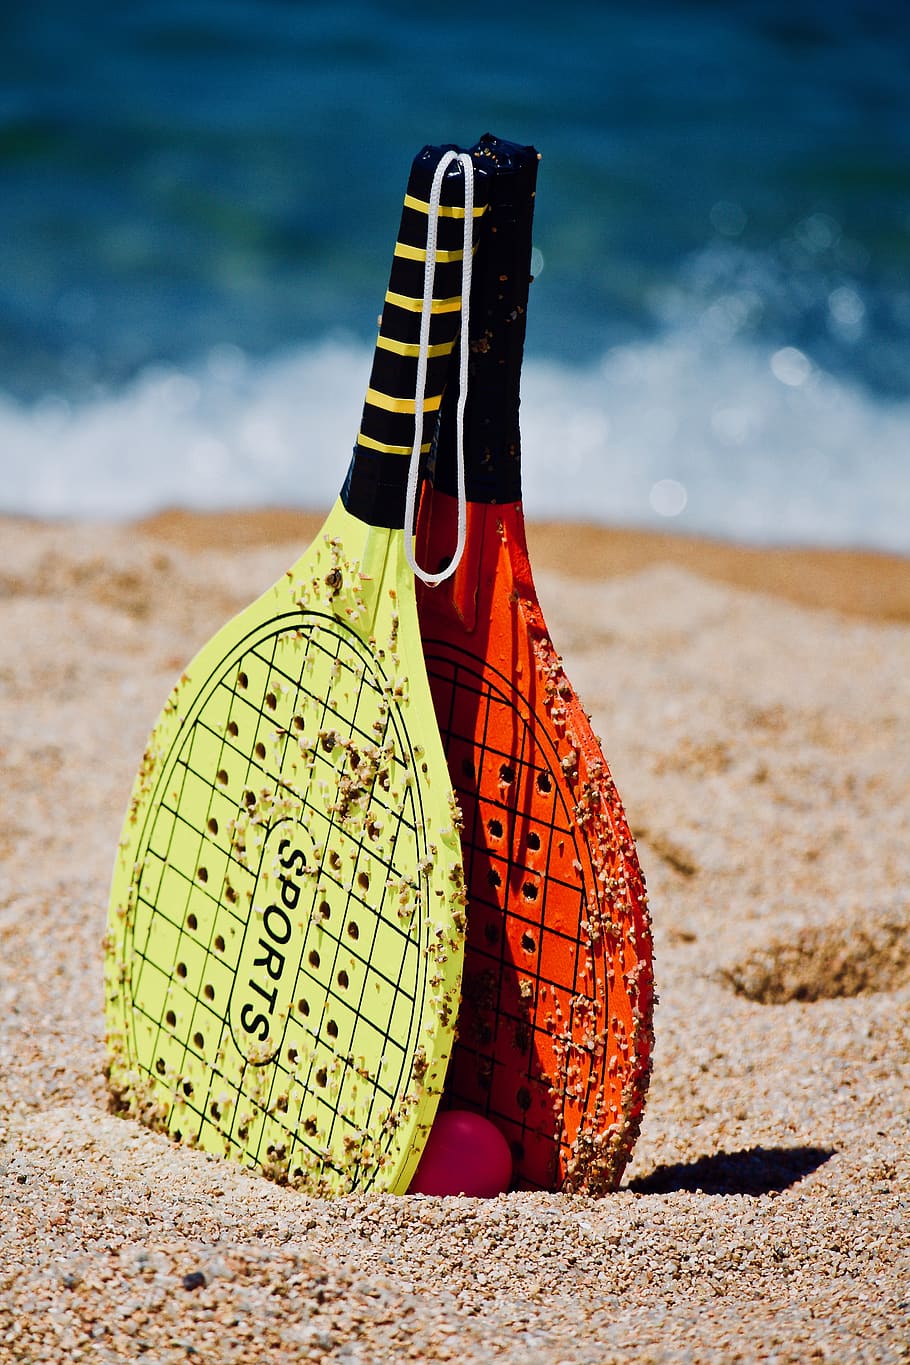 pantai, laut, air, olahraga, raket, permainan pantai, tenis, musim panas, liburan, relaksasi